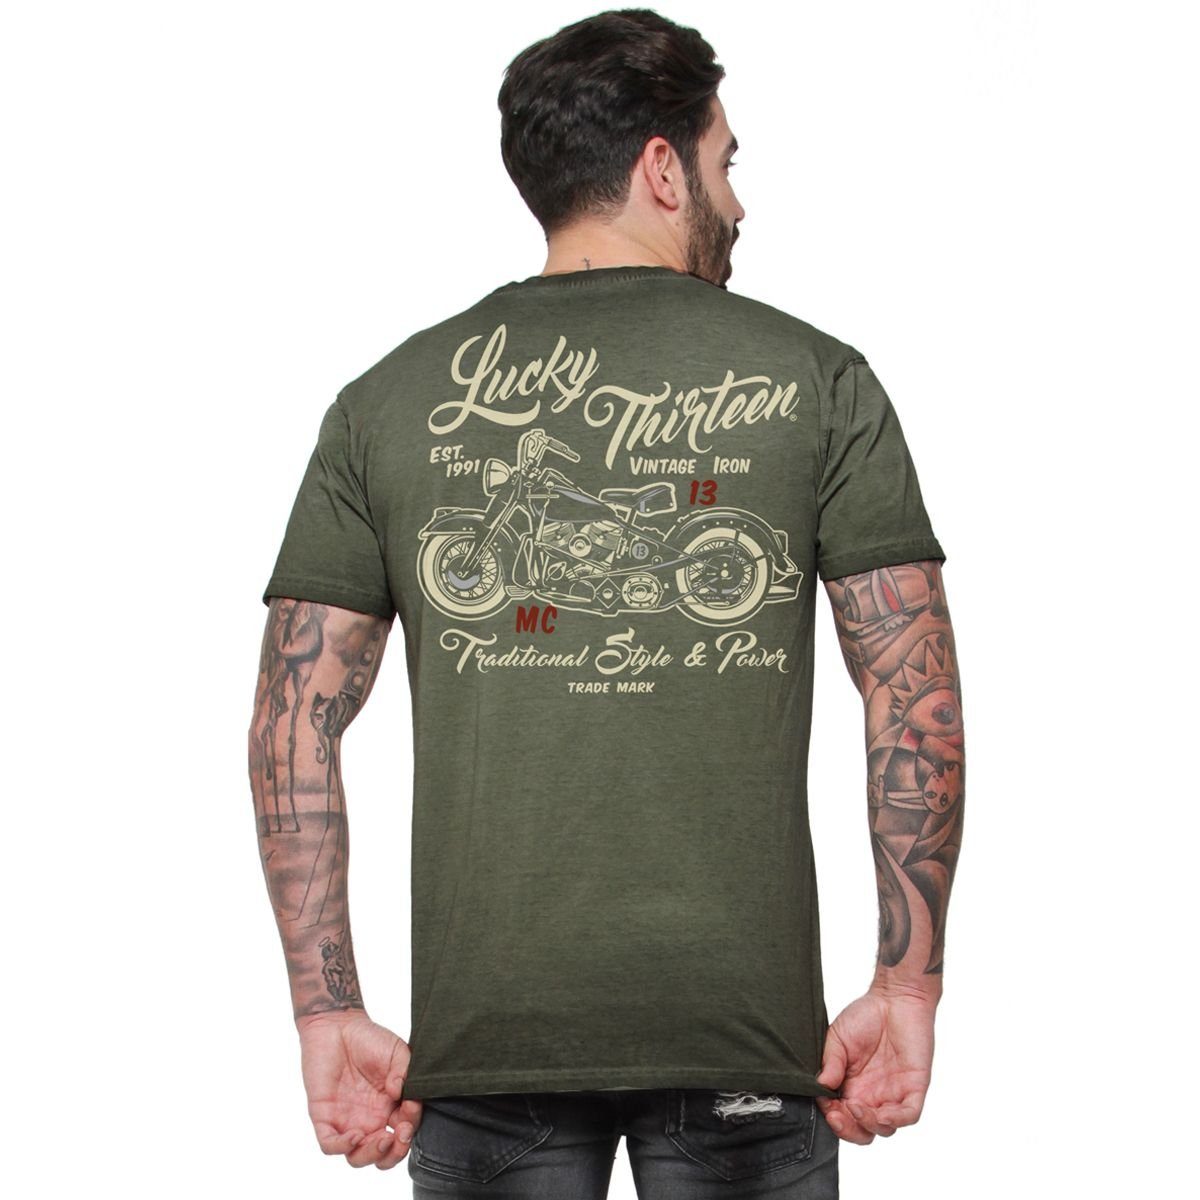 13 Herren Lucky Lucky Vintage green T-Shirt T-Shirt Iron 13 retro Adult